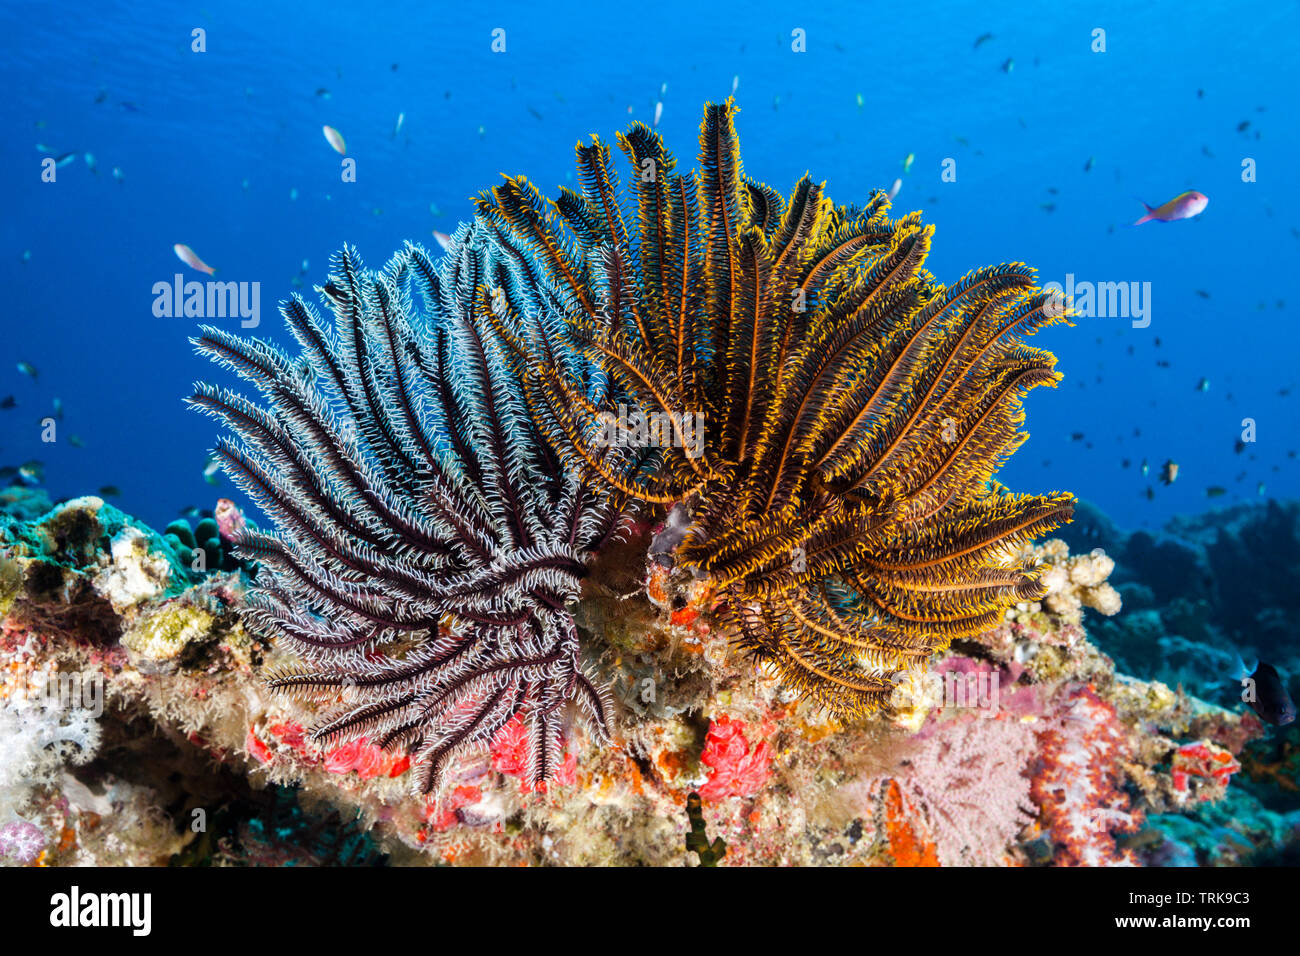 Les Crinoïdes dans les récifs coralliens, Comaster, schlegeli Lissenung, New Ireland, Papouasie Nouvelle Guinée Banque D'Images